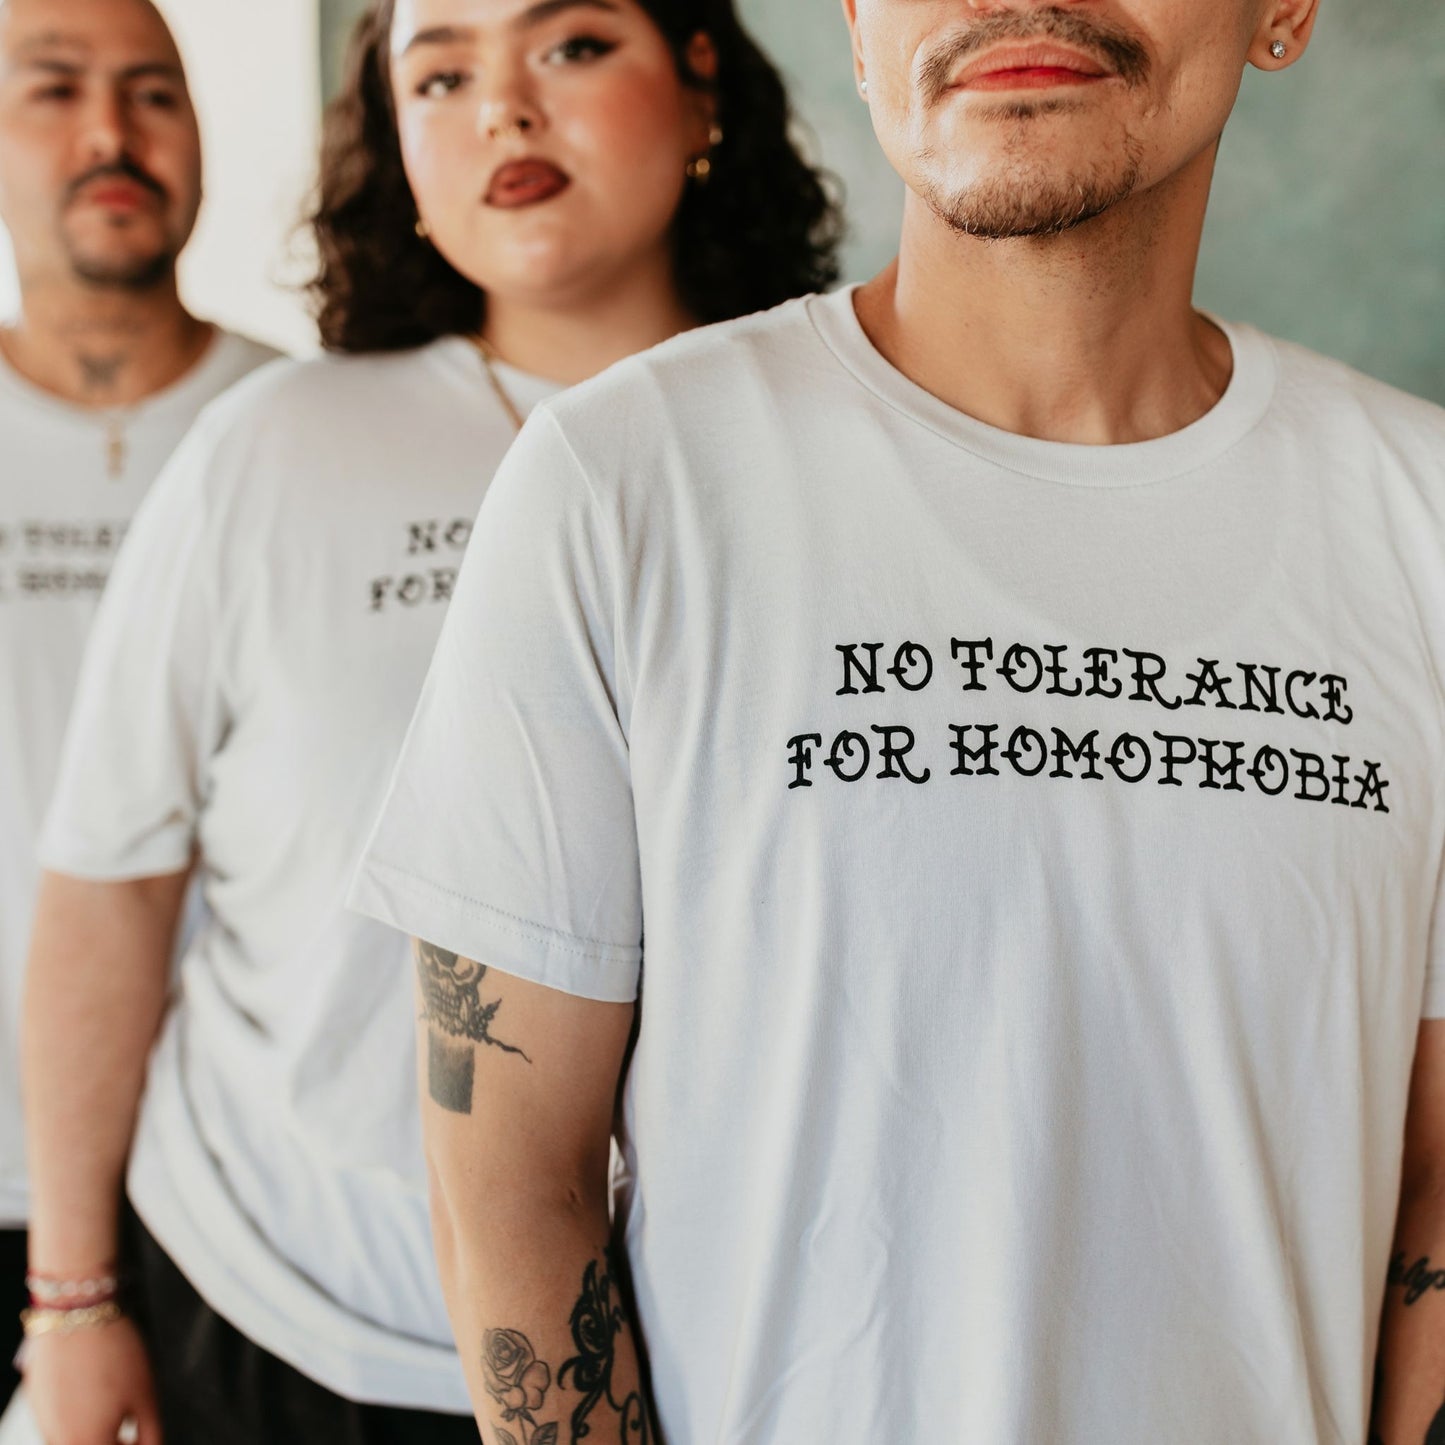 No Tolerance For Homophobia shirt